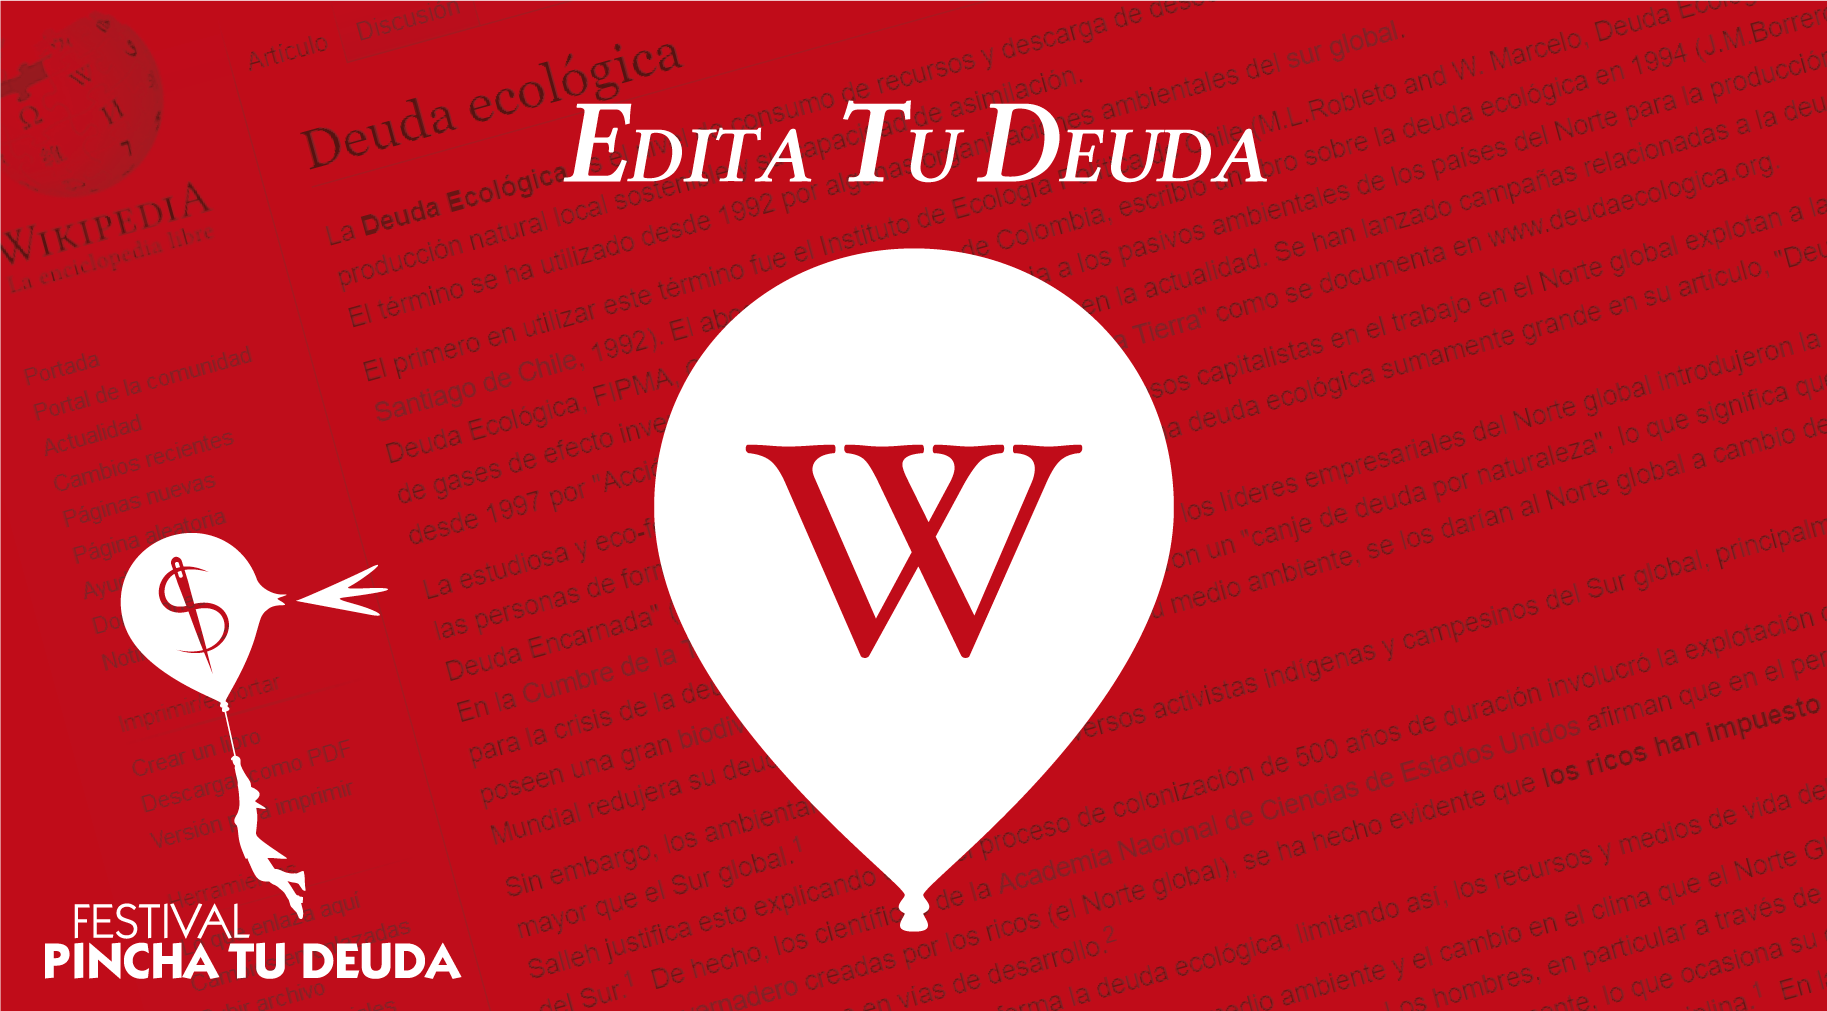 Edition marathon 'Edita Tu Deuda' (Edit your Debt)